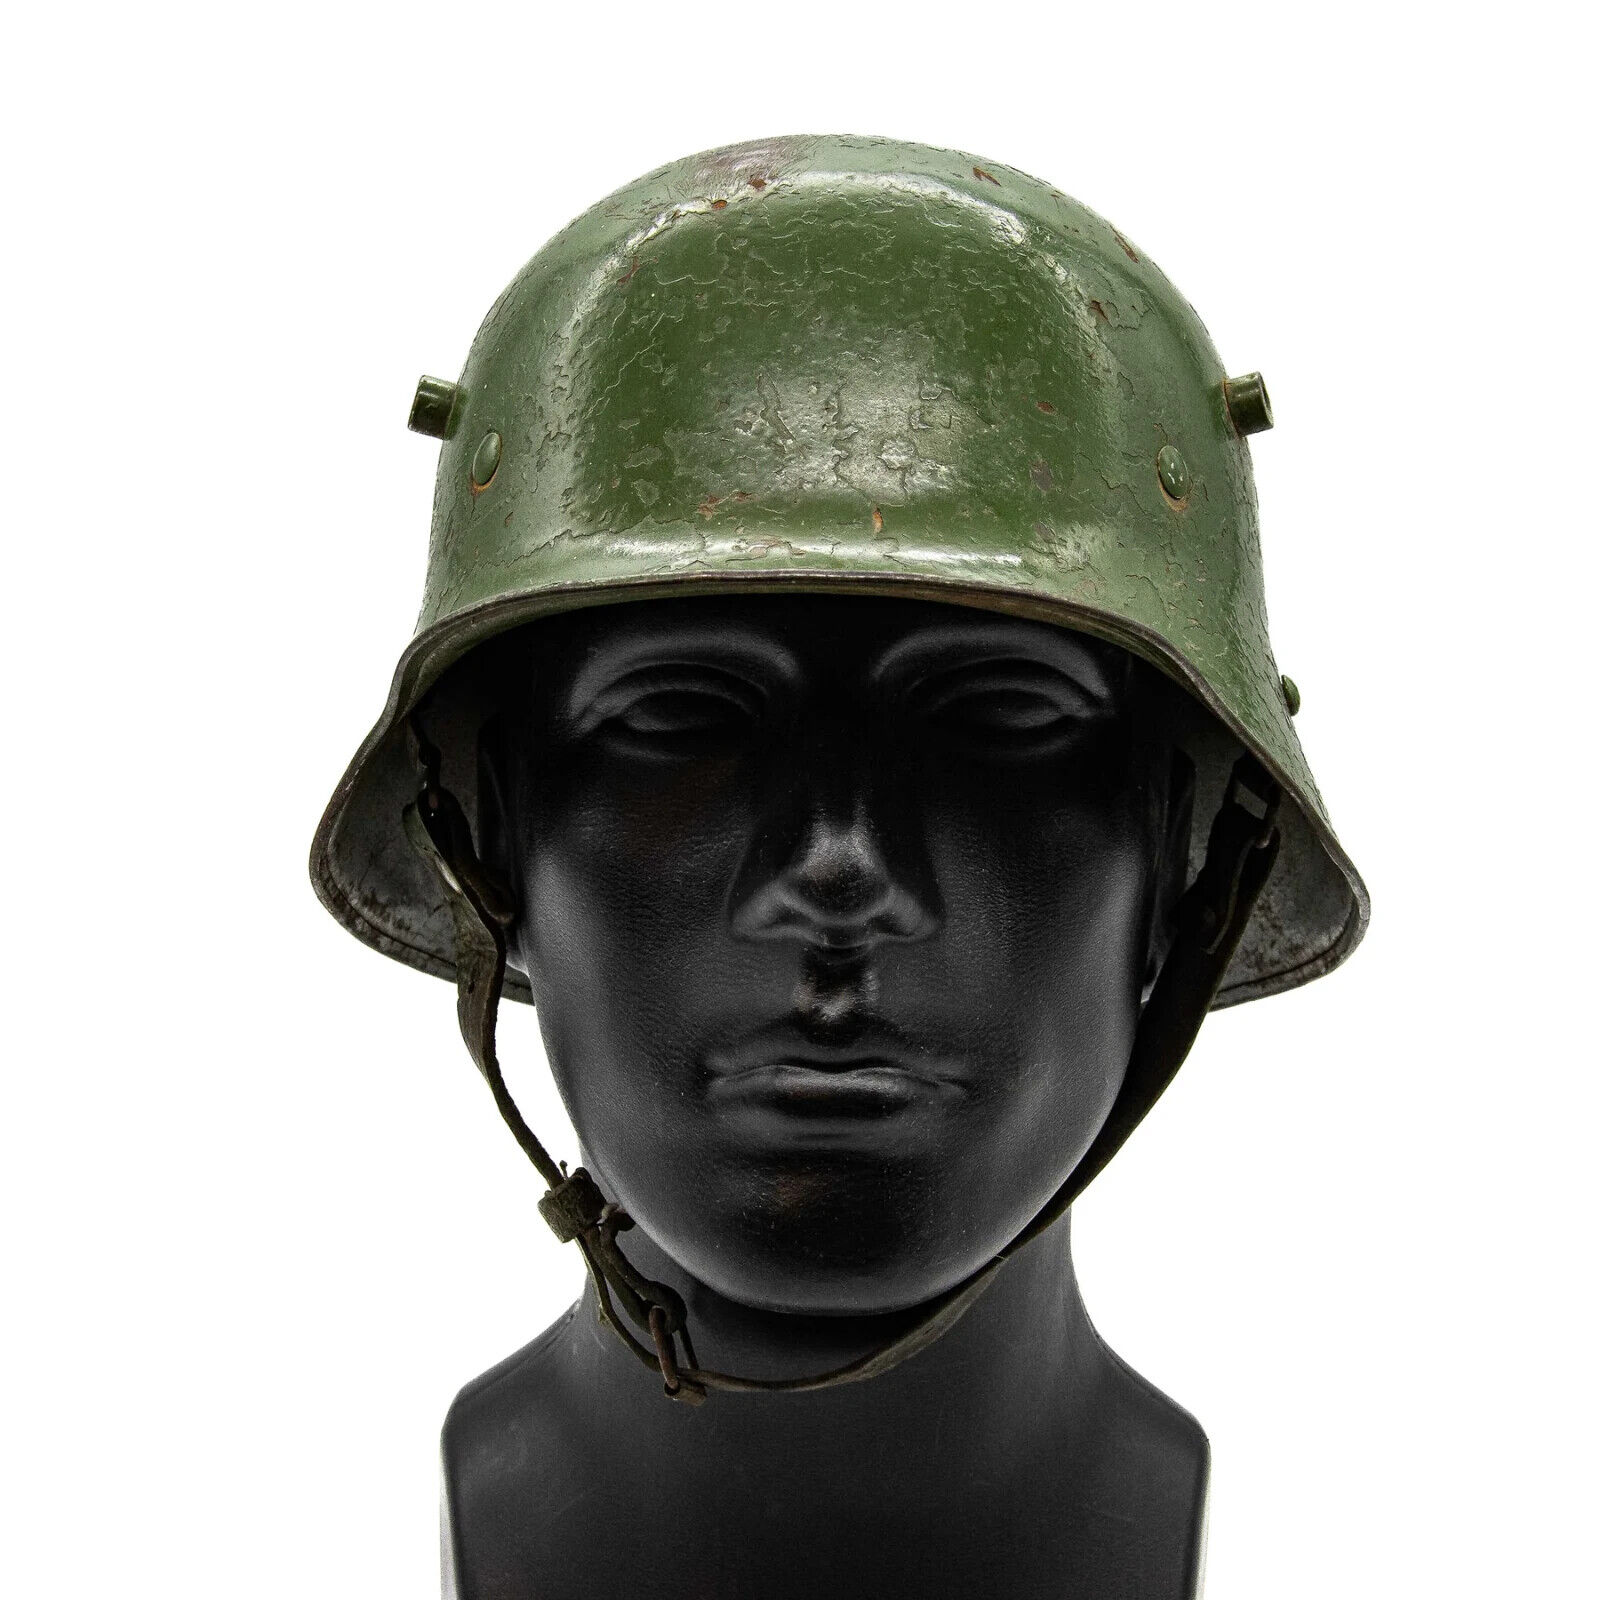 WWI German MK17 Stahlhelm Helmet with Original Liner & Chin Strap